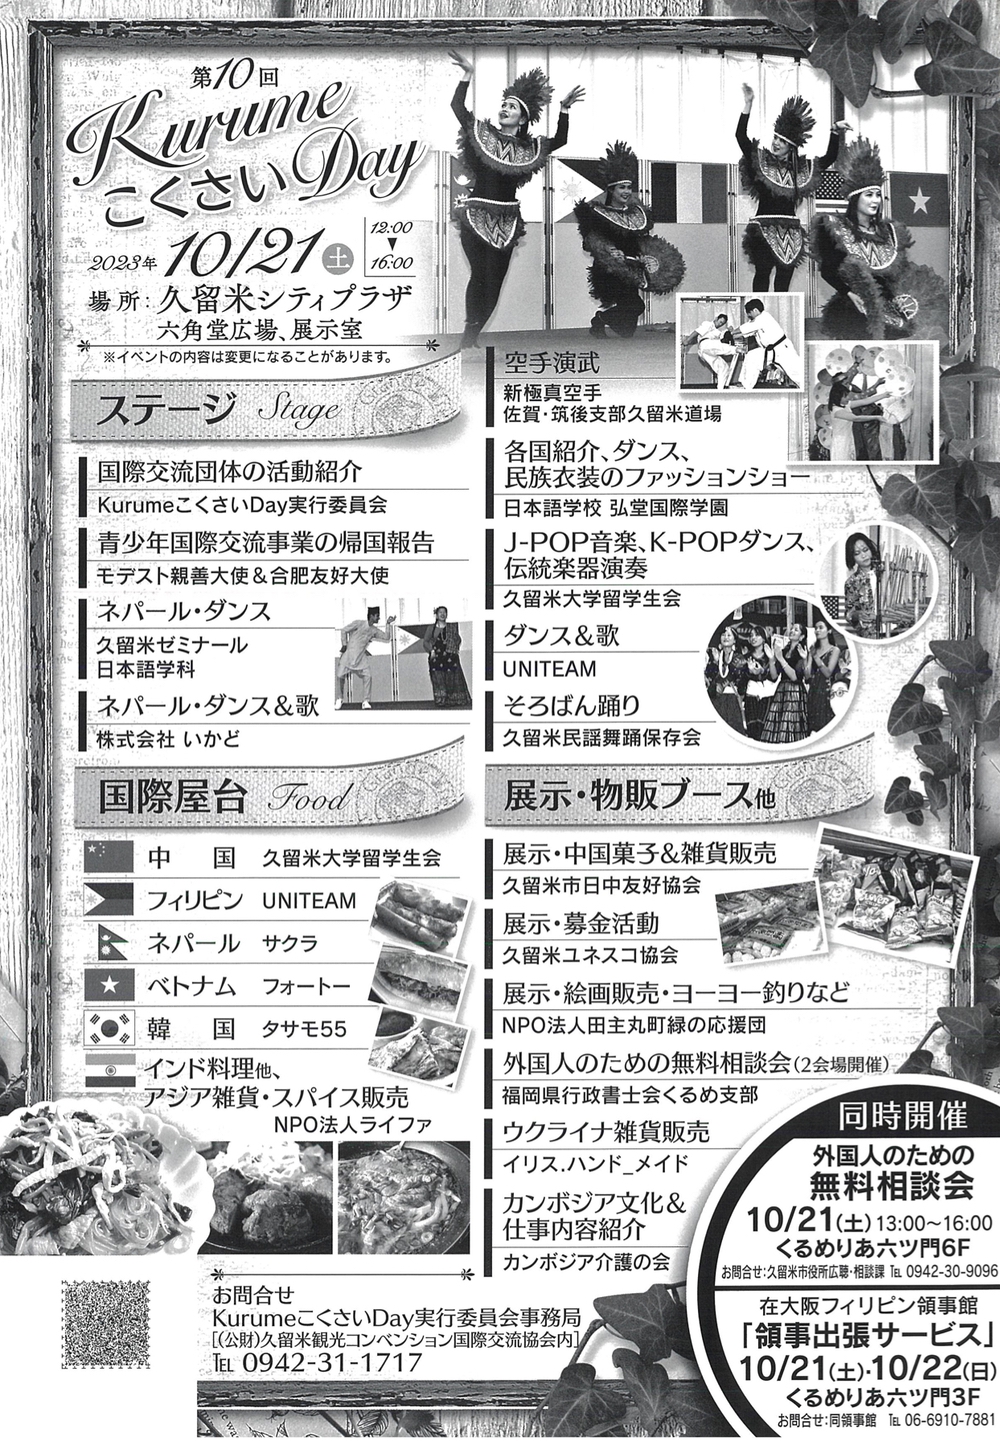 「KurumeこくさいDay2023」ステージイベントや国際色豊かな料理を販売